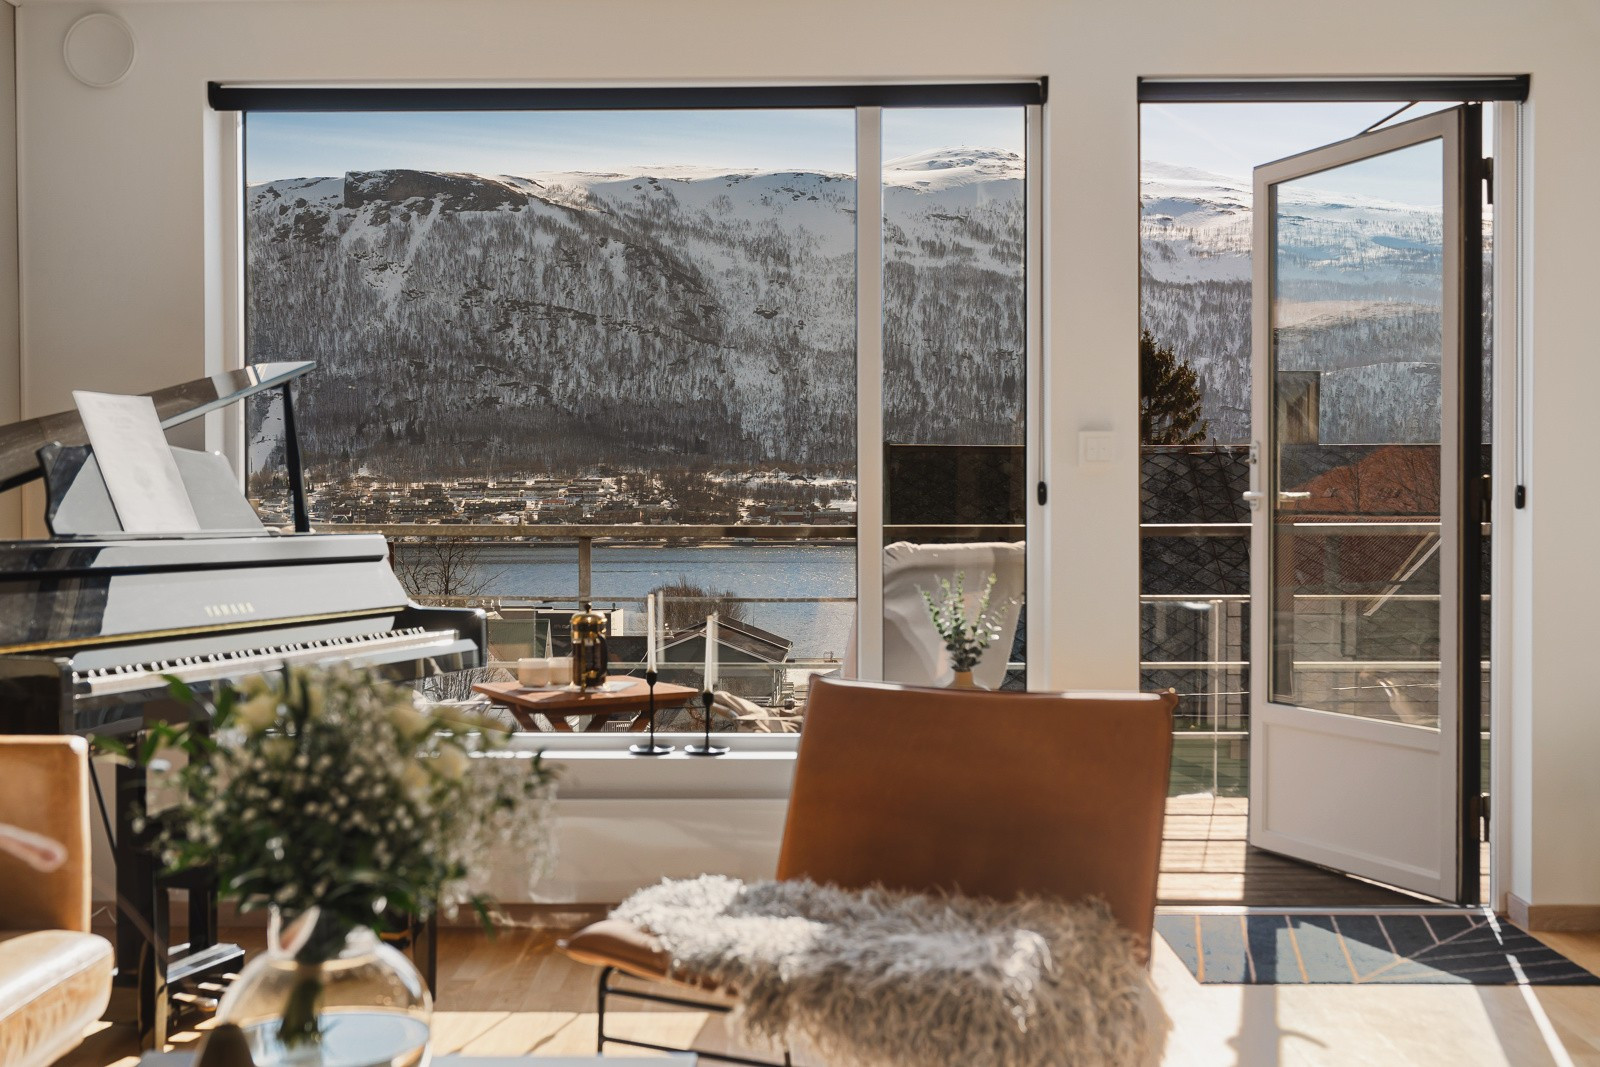 De store vindusflatene slipper inn rikelige mengder med naturlig lys og byr på vakker utsikt over sundet mot Tromsdalen og Fjellheisen.